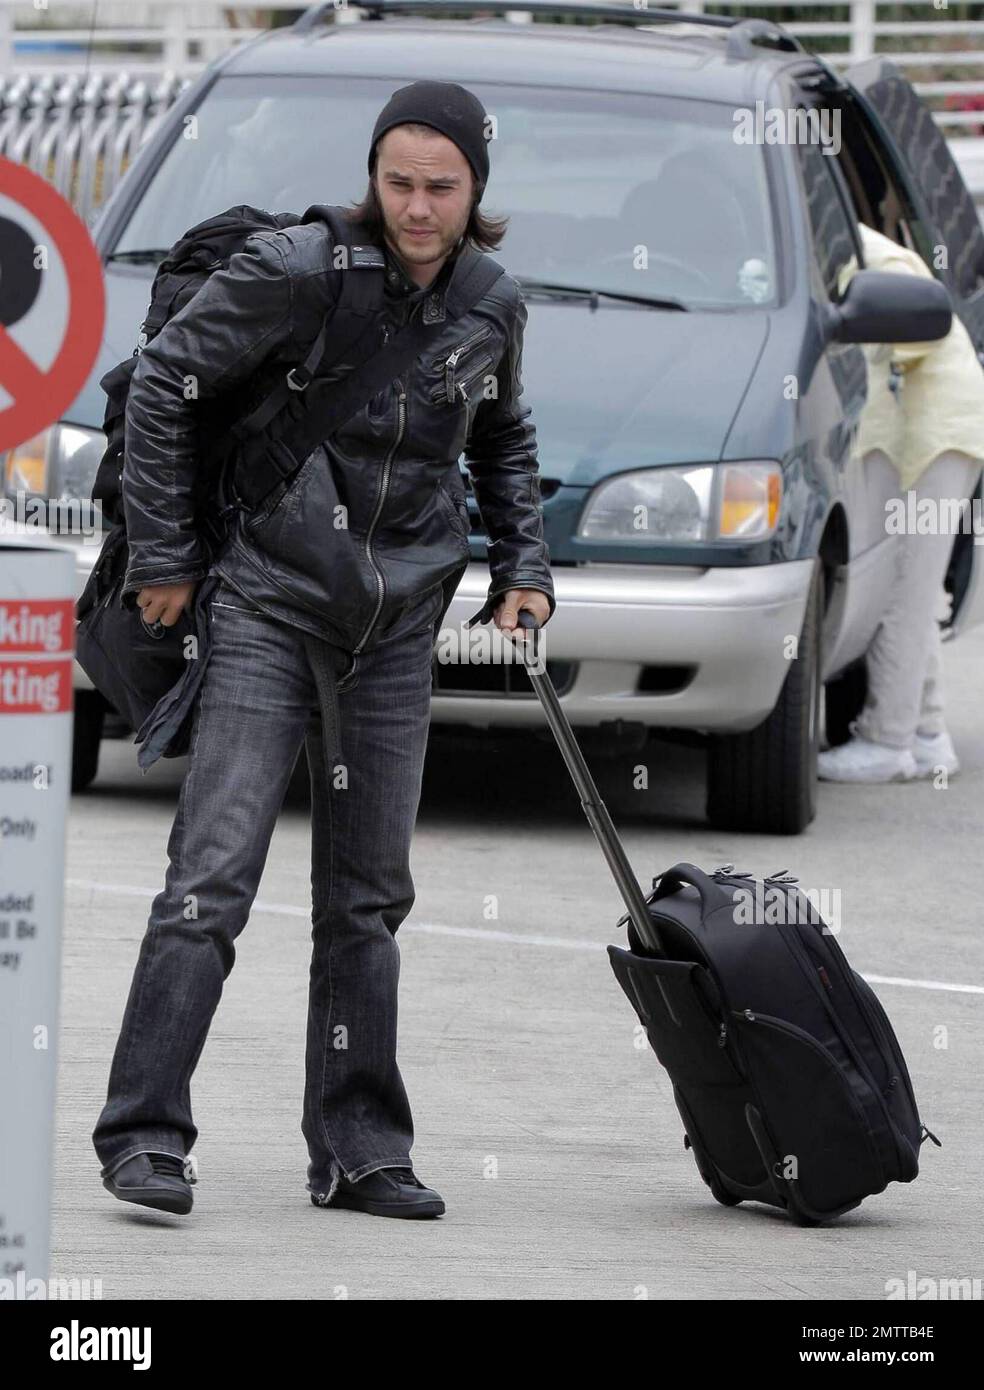 Taylor Kitsch schleppt seine eigenen Taschen auf dem Weg durch LAX, um einen Flug zu erwischen. Der X-Men Schauspieler trug eine Lederjacke und einen Hut, musste aber einige Schichten für die Sicherheitskontrolle ausziehen. Los Angeles, Ca. 6/2/09. . Stockfoto